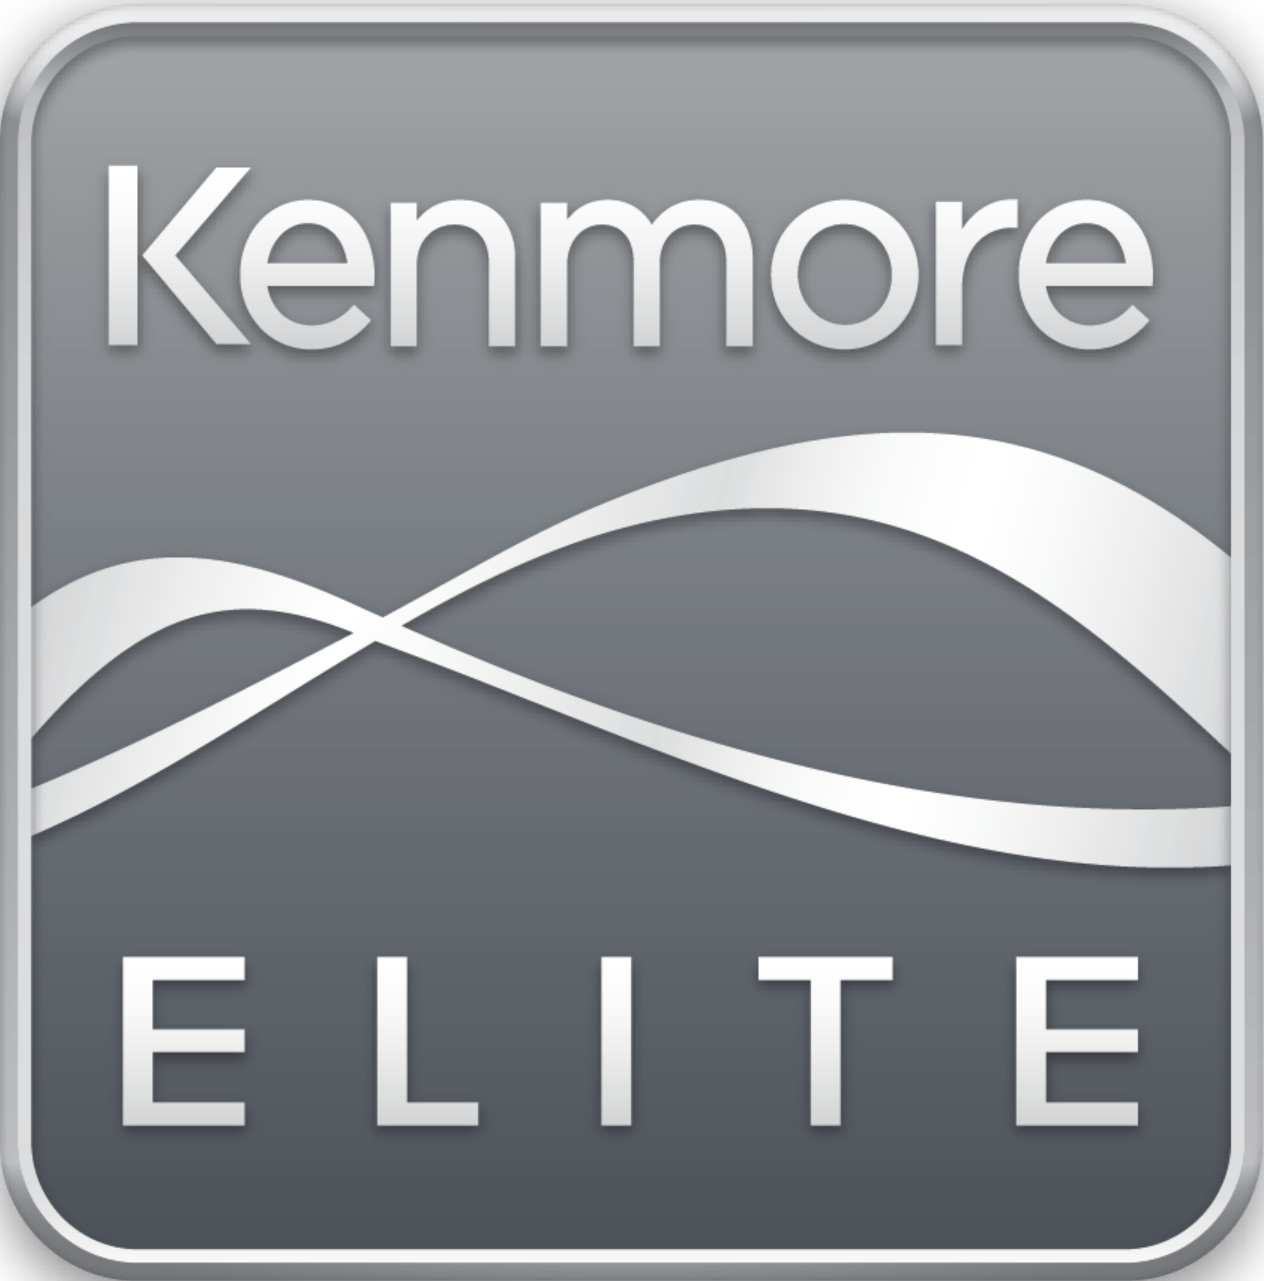 Kenmore Appliance Repair California